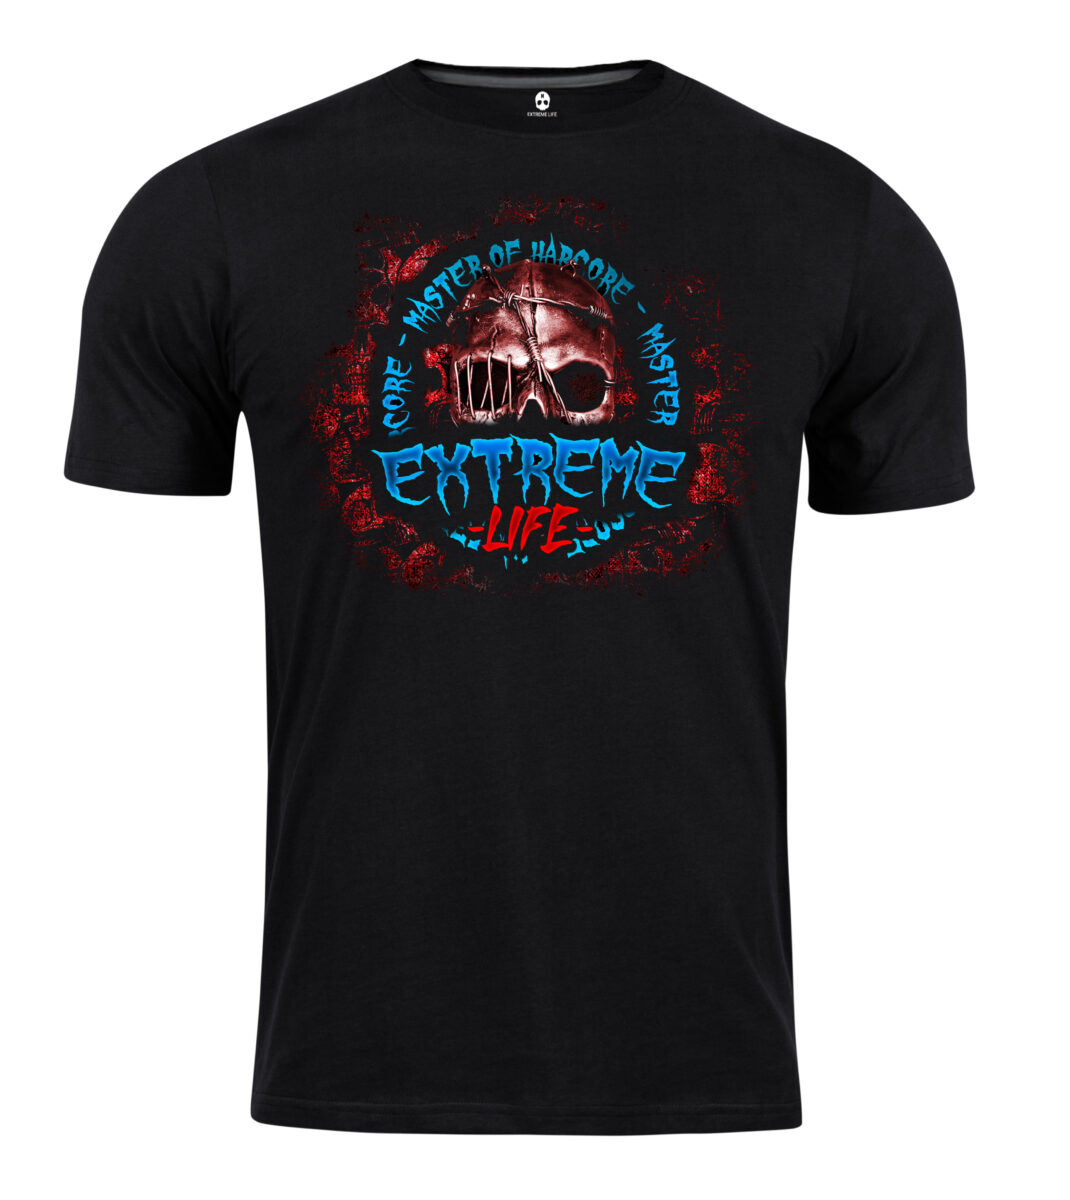 T-shirt Extreme Life Master